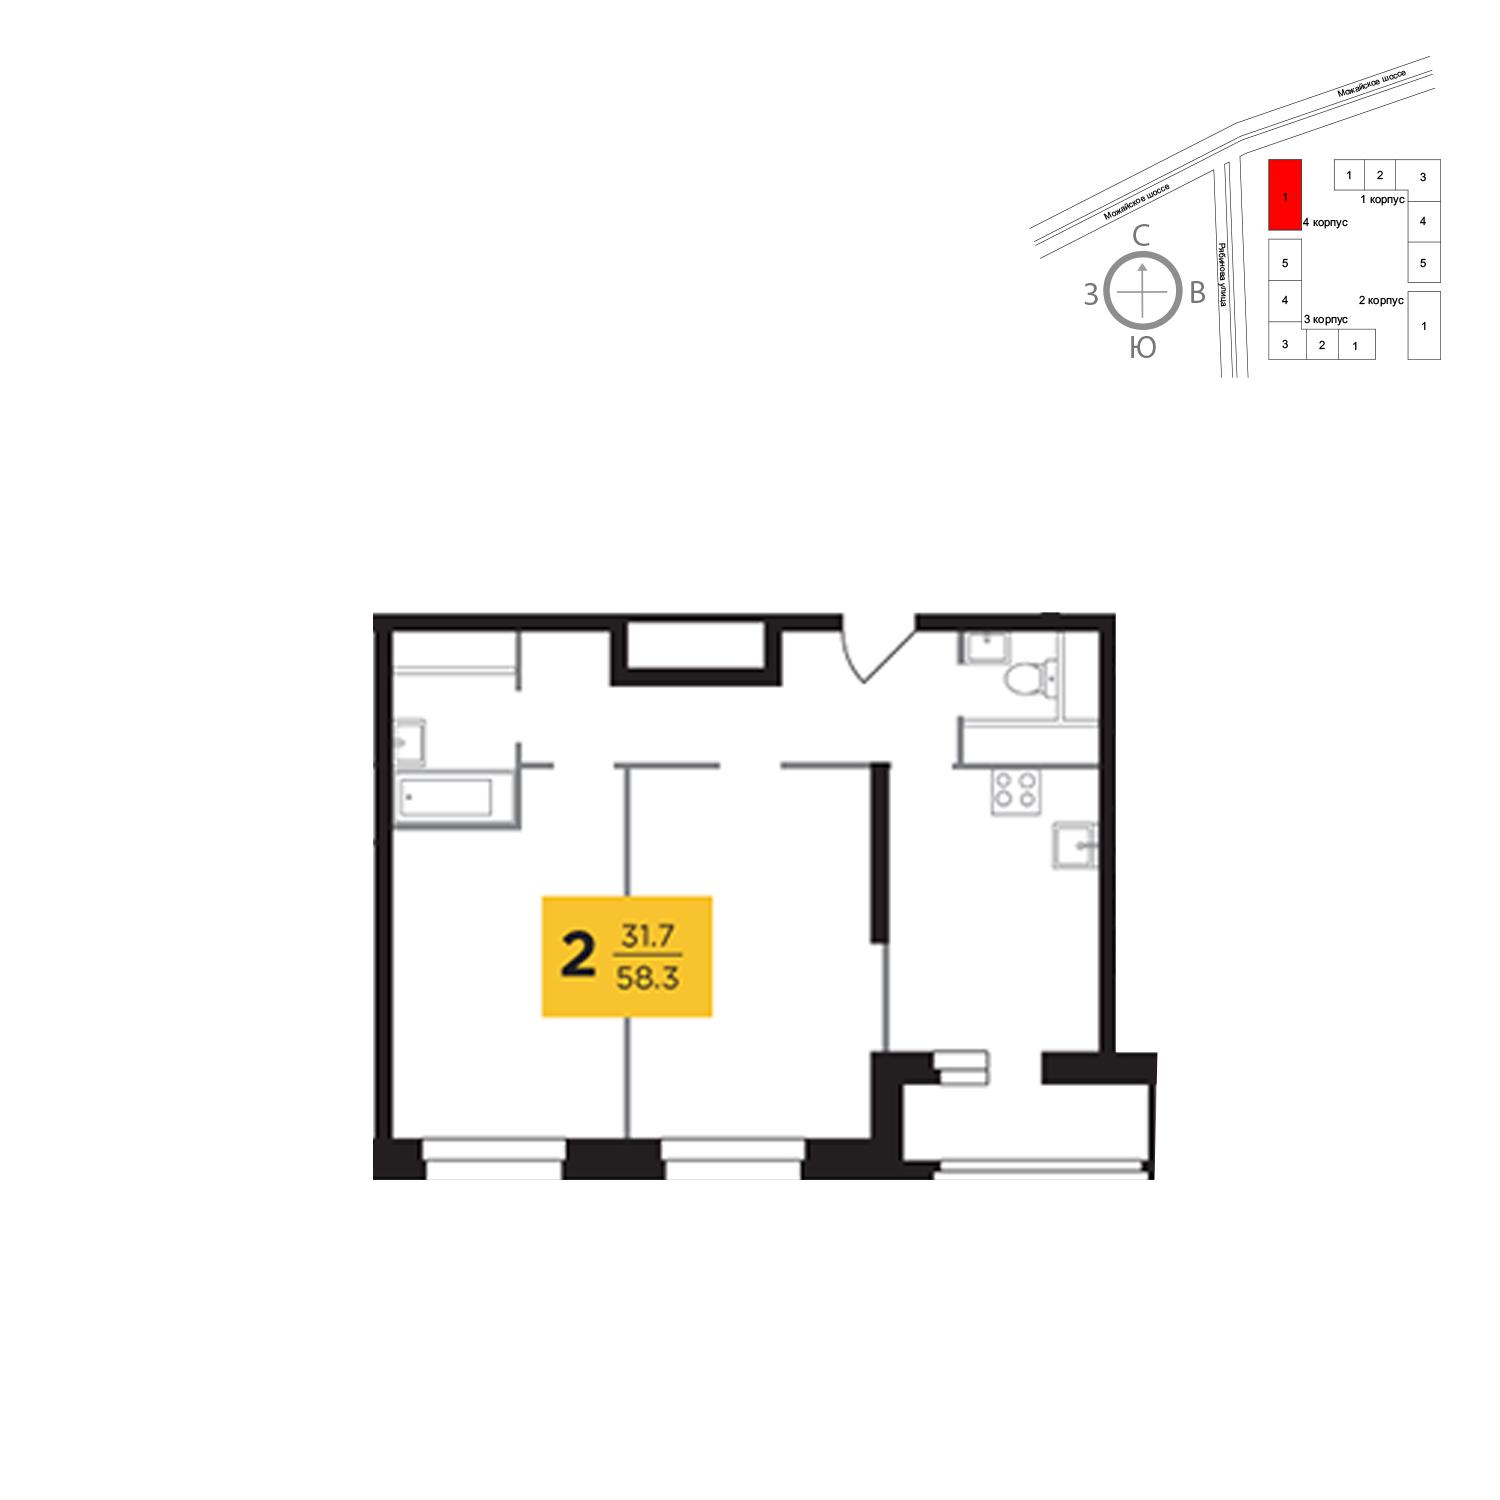 Продаётся 2-комнатная квартира в новостройке 58.3 кв.м. этаж 23/23 за 12 399 030 руб 